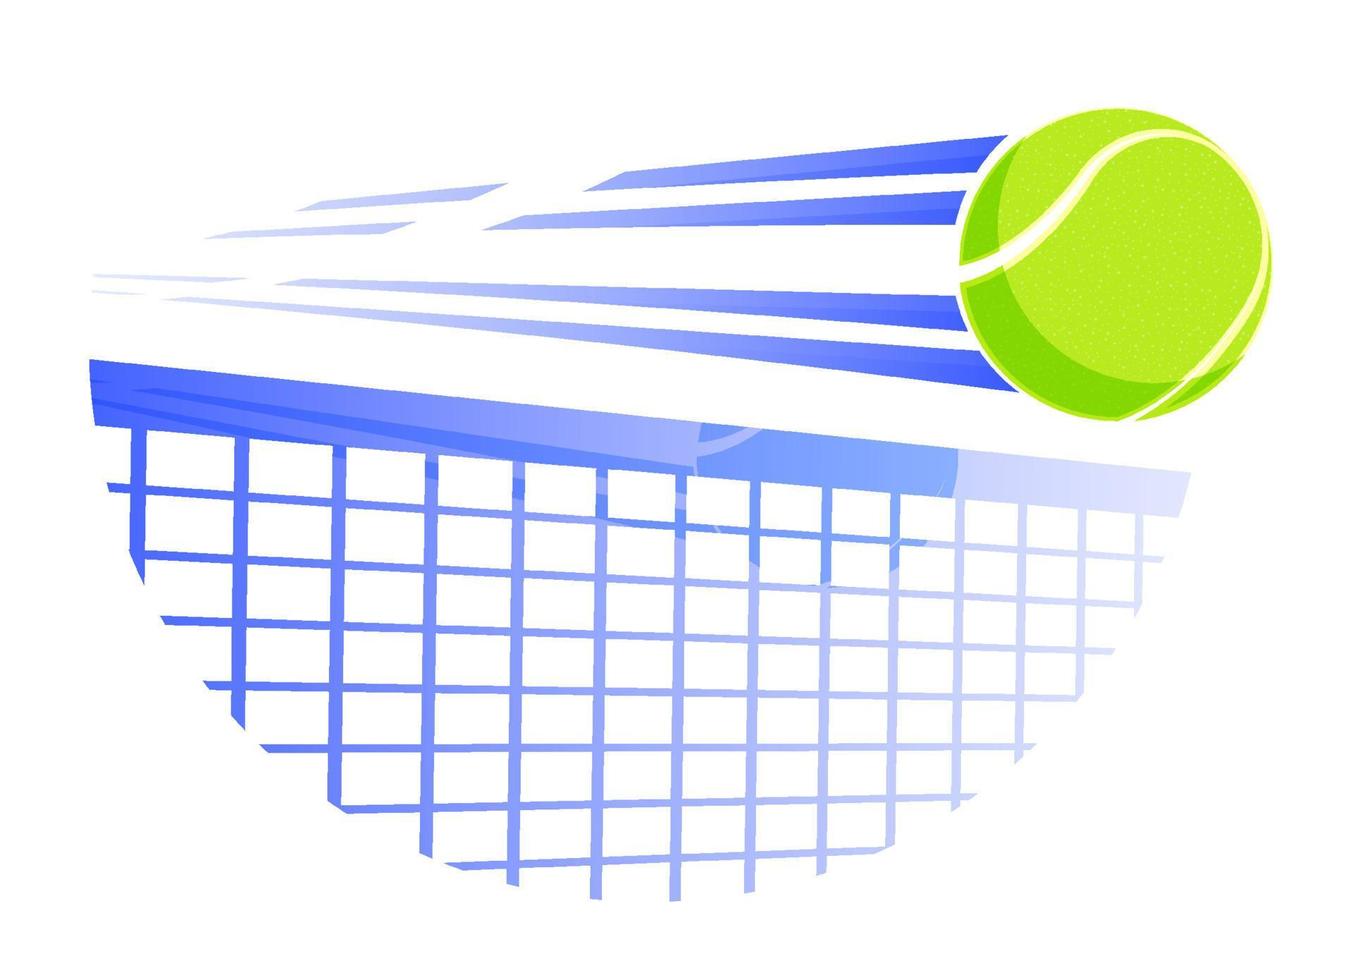 la pelota de tenis rápida vuela a gran velocidad en la red de tenis. equipo de deporte. símbolo para aplicaciones móviles o web. vector